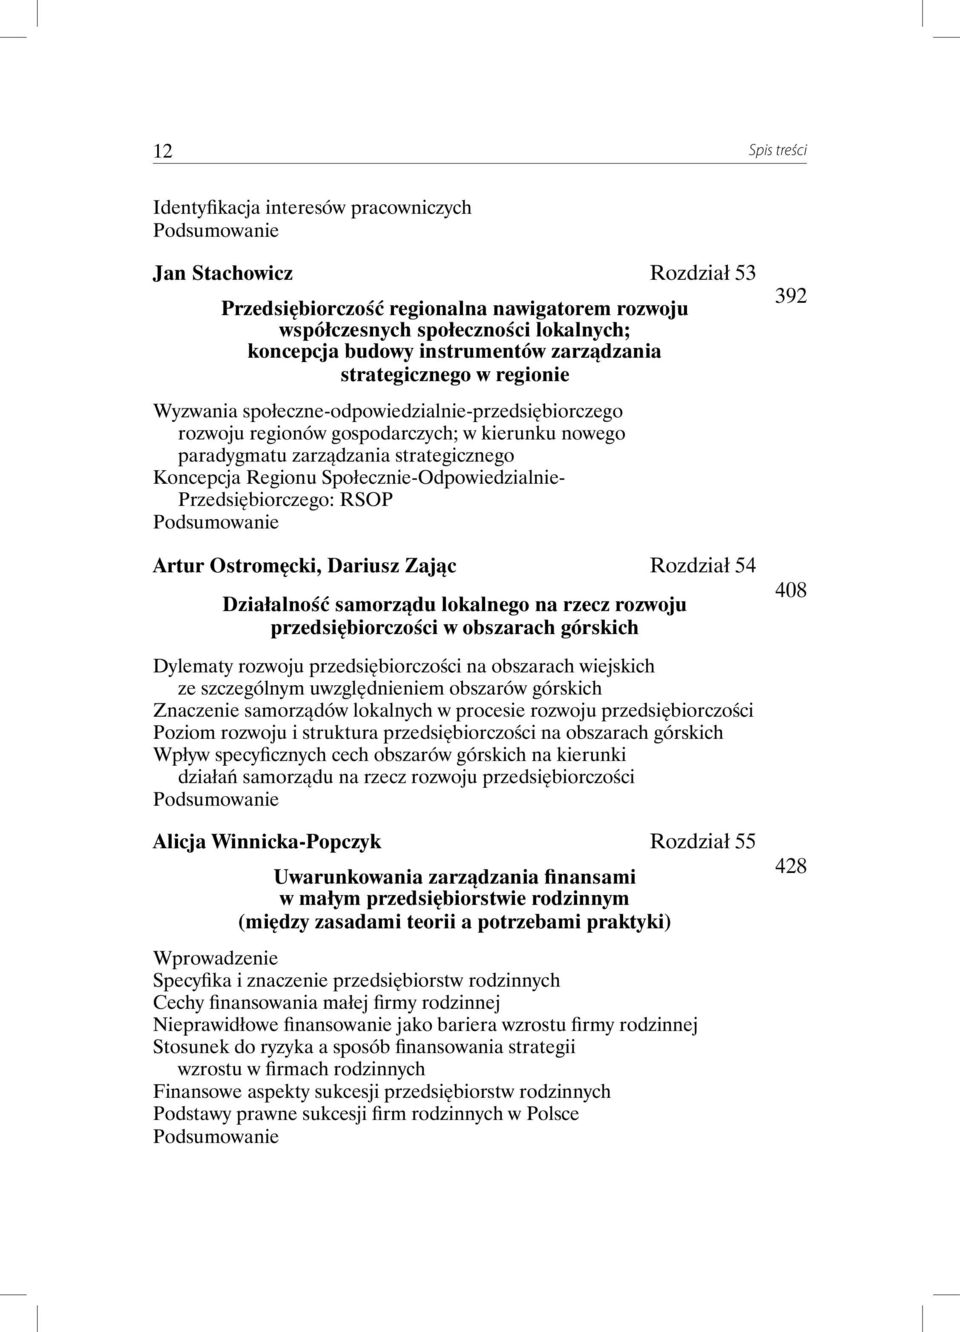 Społecznie-Odpowiedzialnie- Przedsiębiorczego: RSOP Artur Ostromęcki, Dariusz Zając Rozdział 54 Działalność samorządu lokalnego na rzecz rozwoju przedsiębiorczości w obszarach górskich 392 408